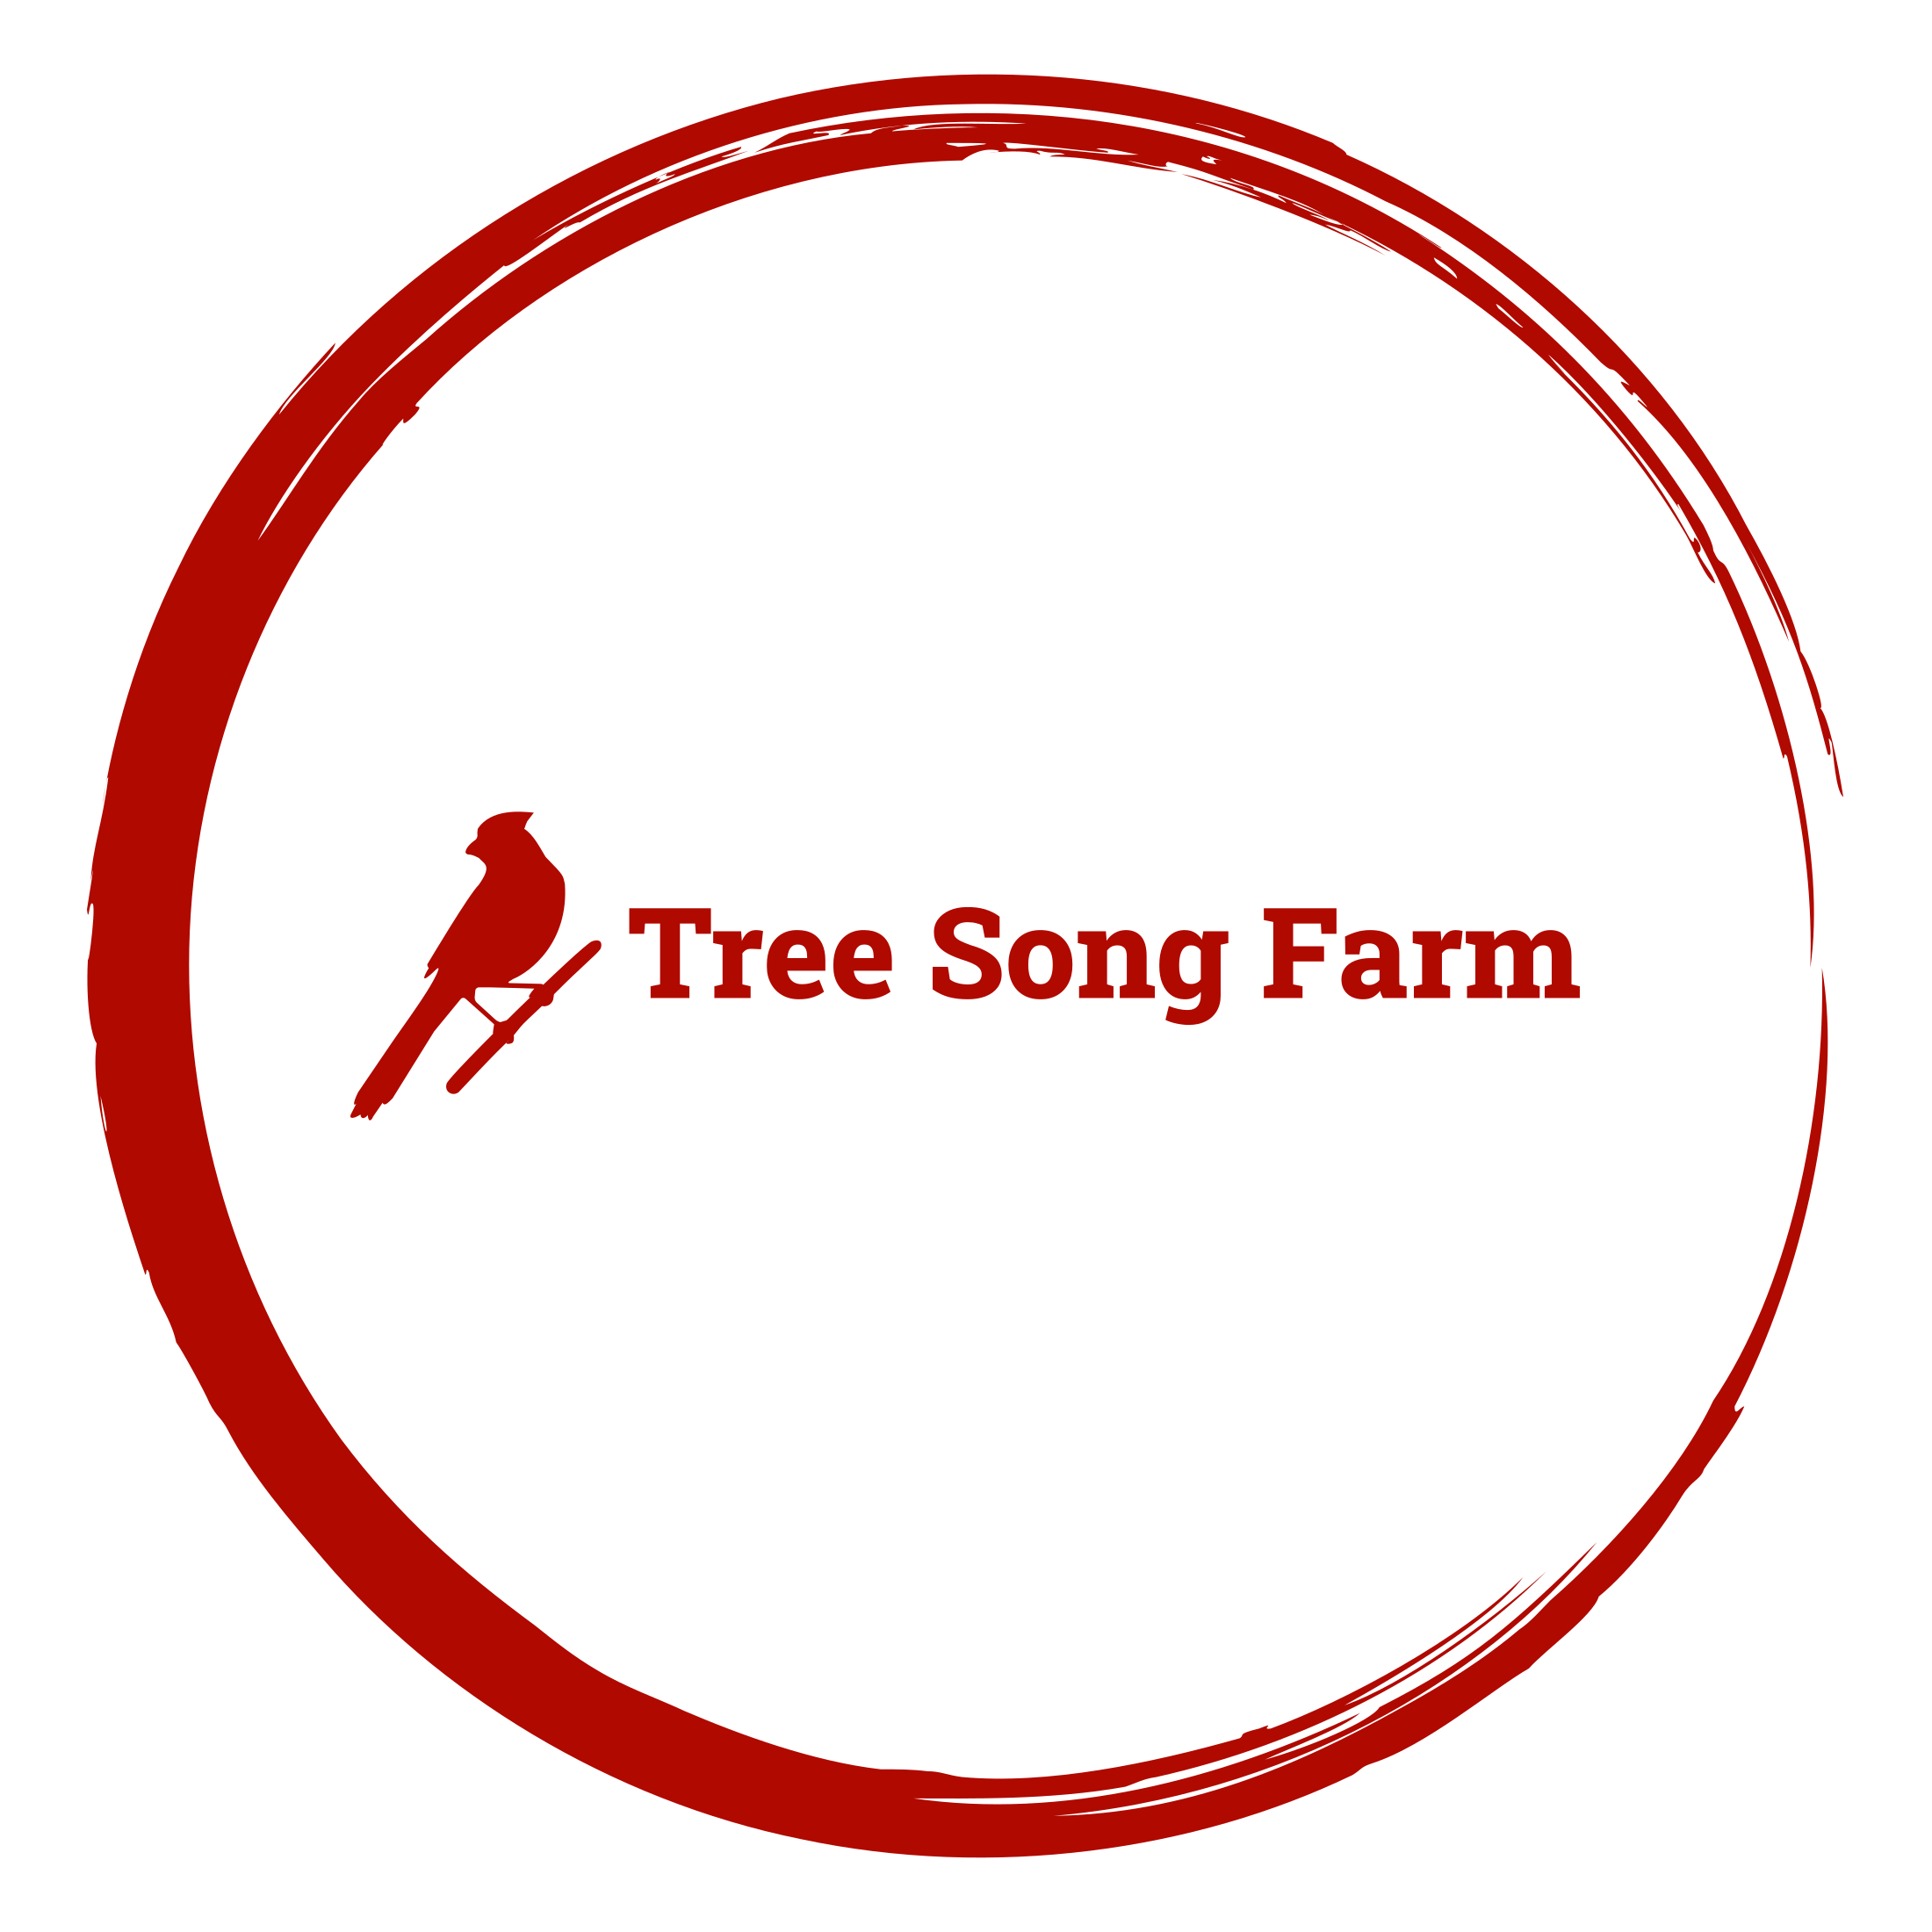 Tree Song Farm